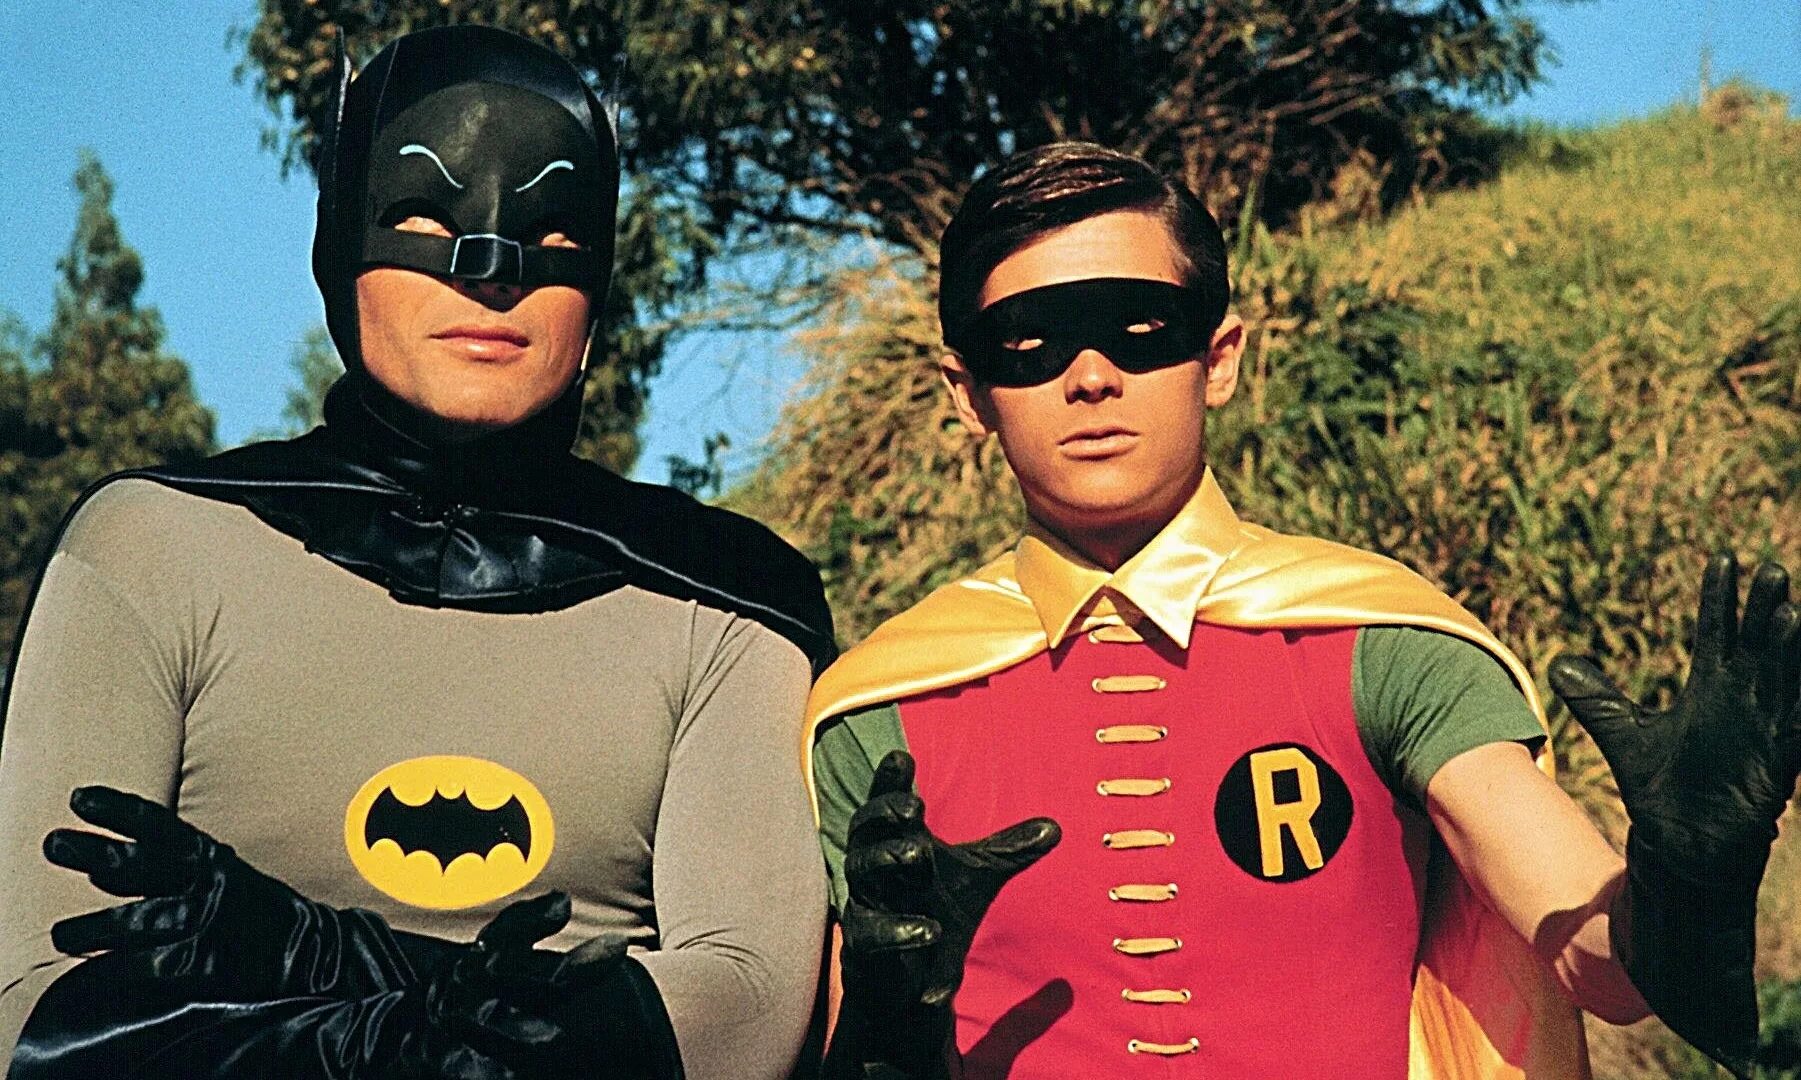 Robin i often have a big. Бэтмен и Робин. Бэтмен и Робин (Batman & Robin), 1997.